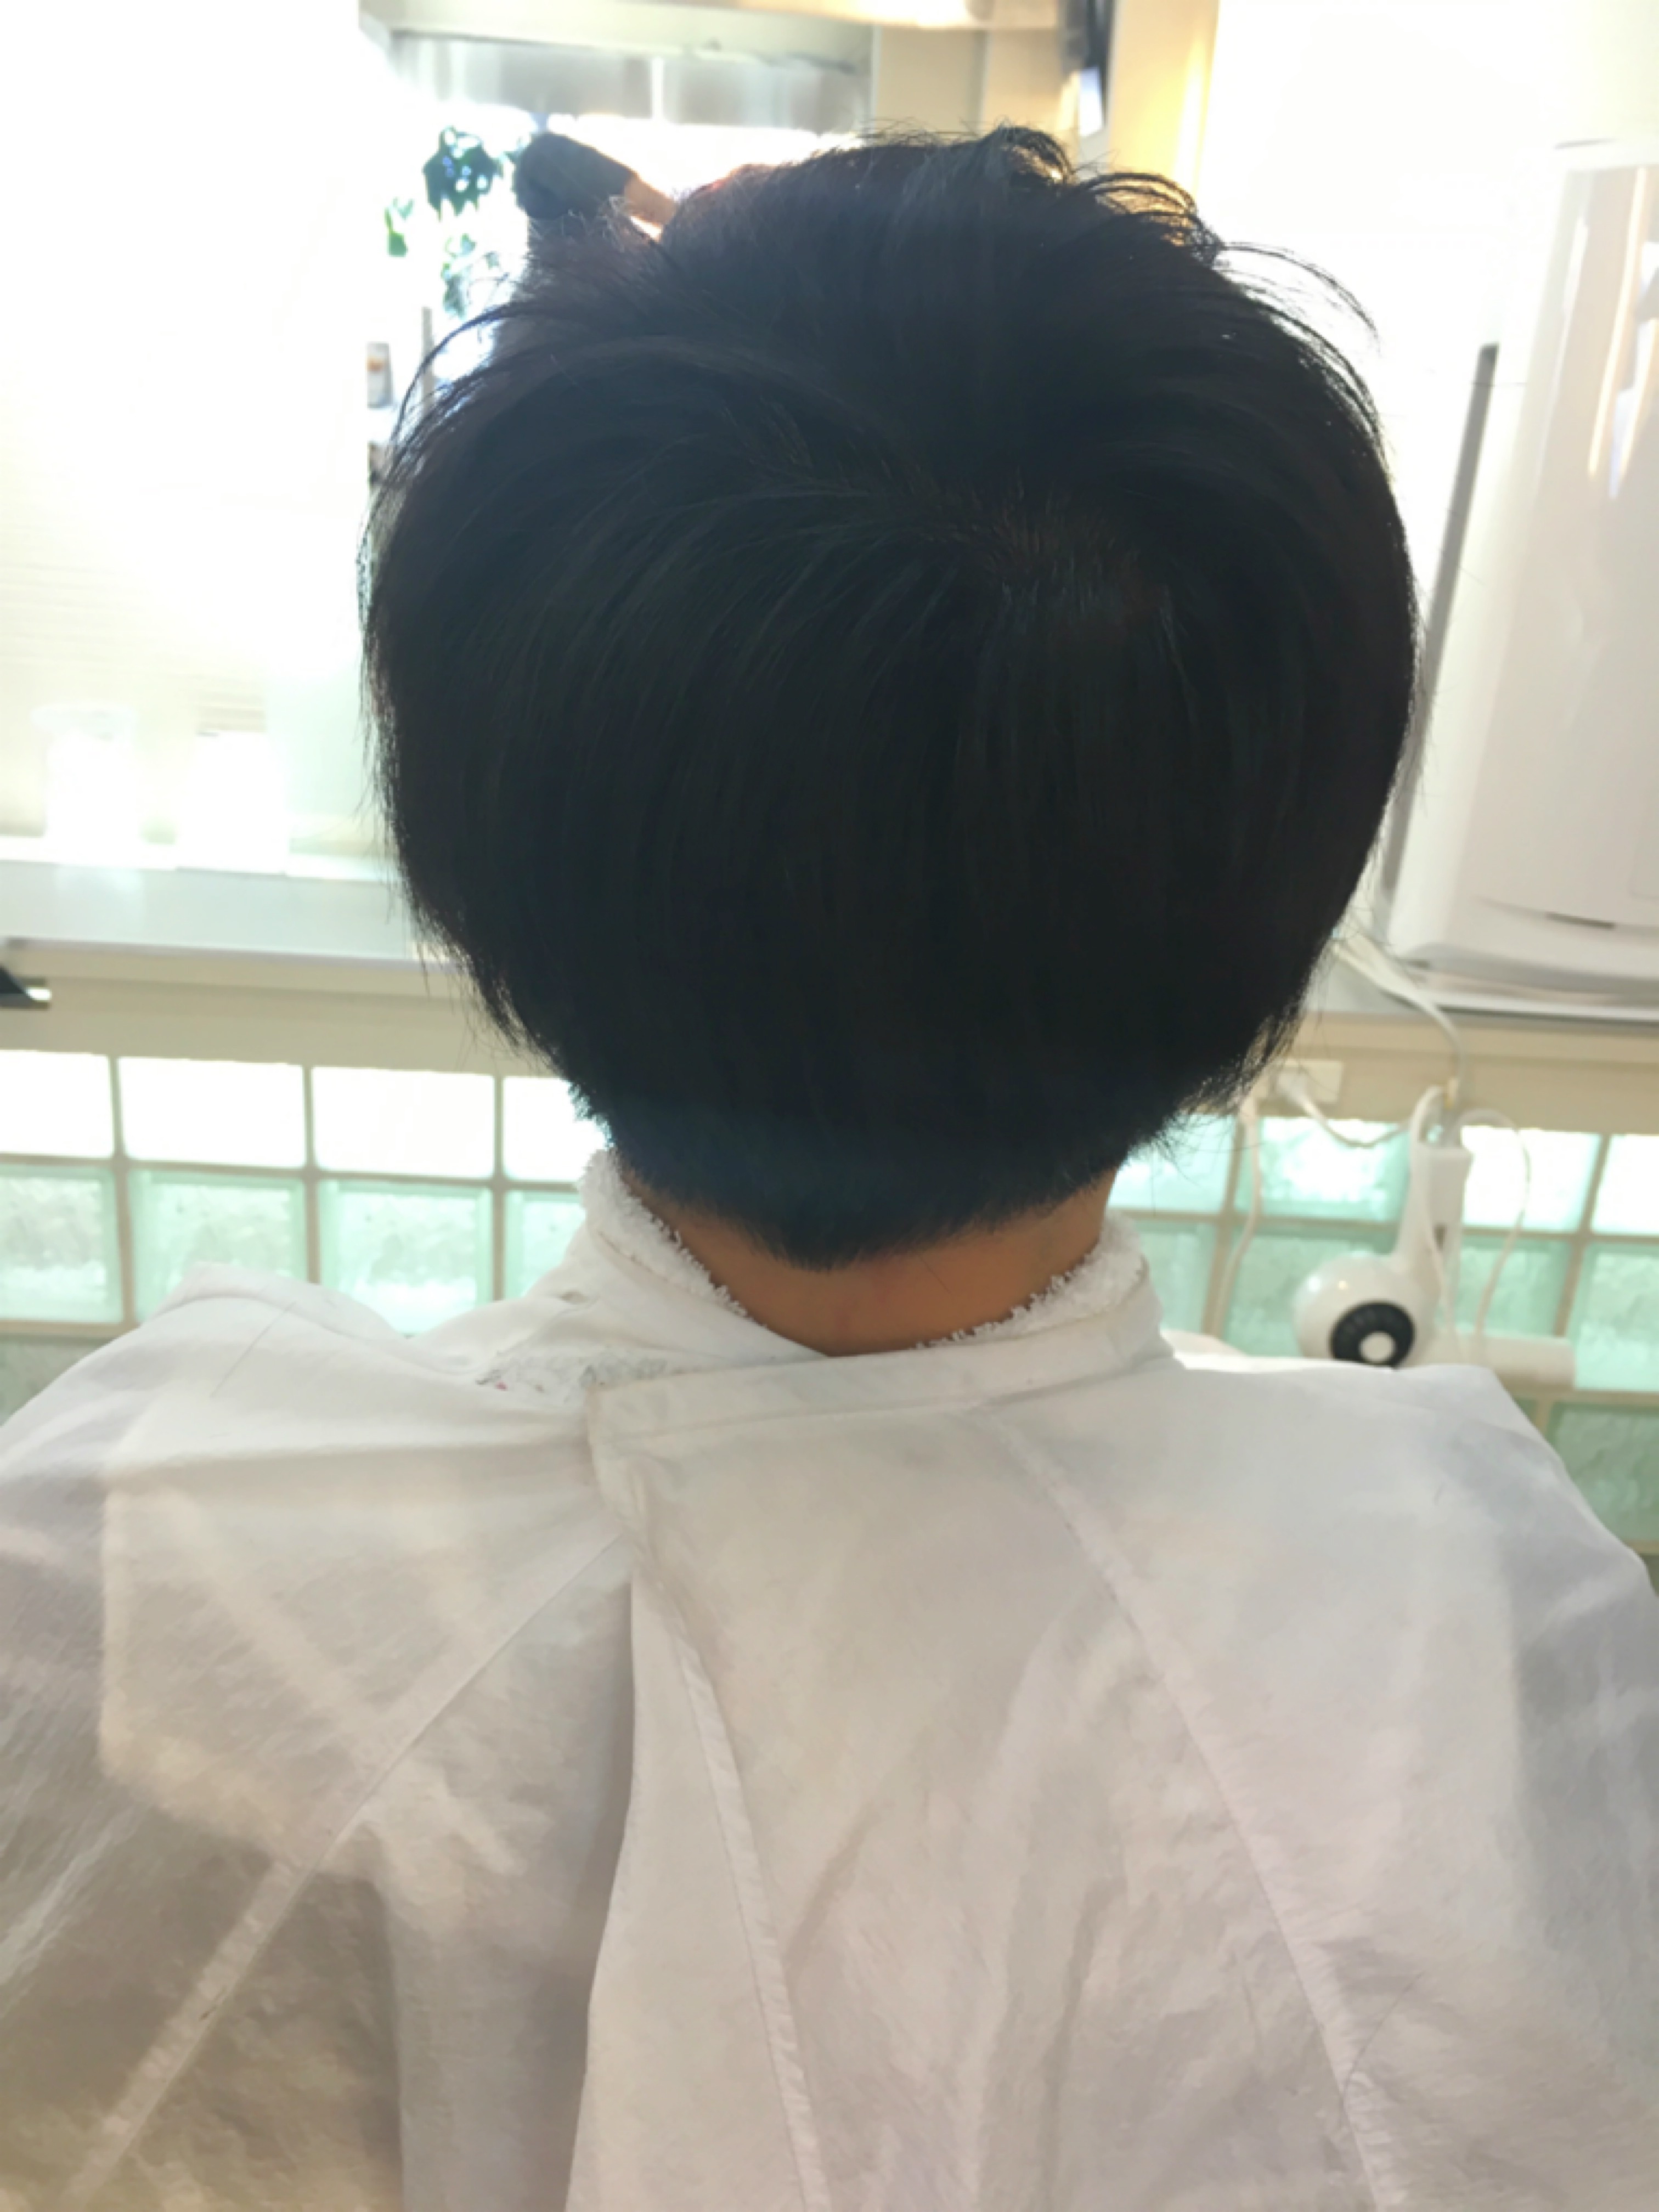 マッシュショート 高校生〜20代前半のメンズでよくオーダーされる髪型 glowm by AFFECT 桑原 淳 blog